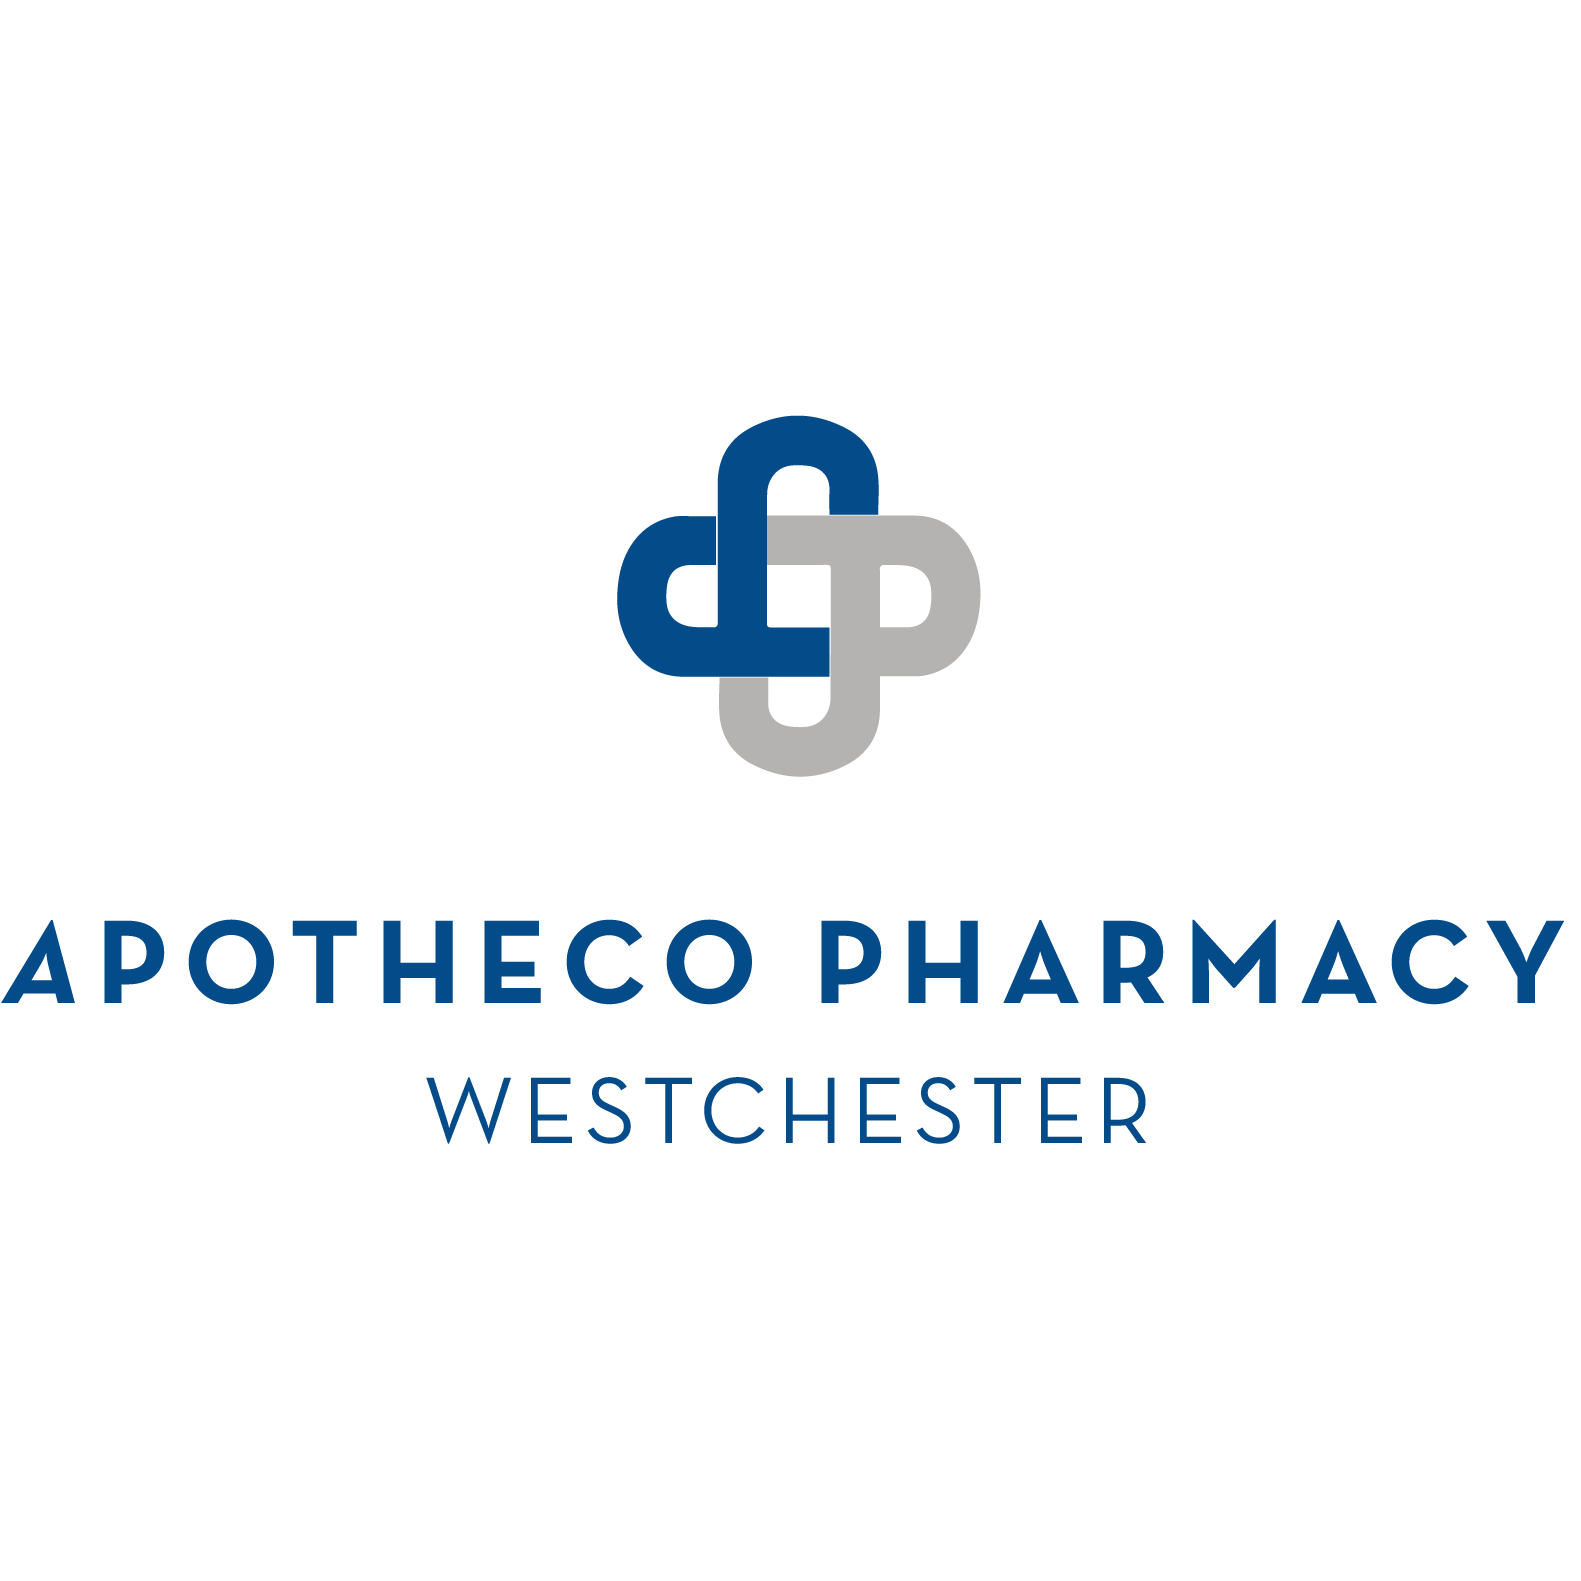 Apotheco Pharmacy Westchester - Irvington, NY 10533 - (914)478-7822 | ShowMeLocal.com